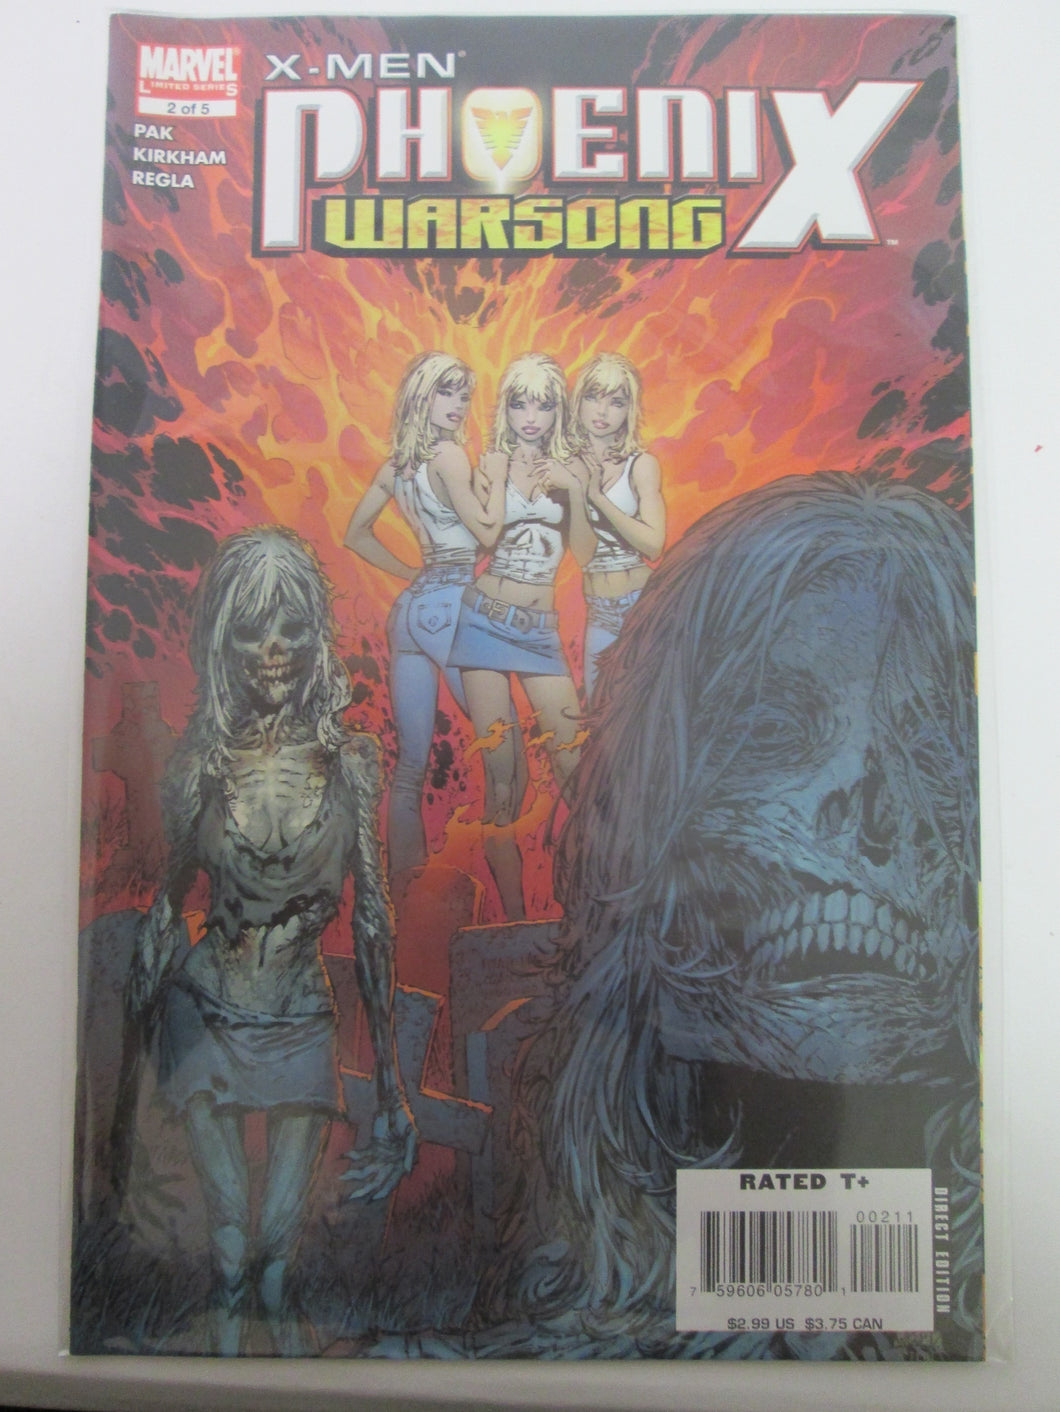 X-Men Phoenix Warsong # 2 (Marvel)